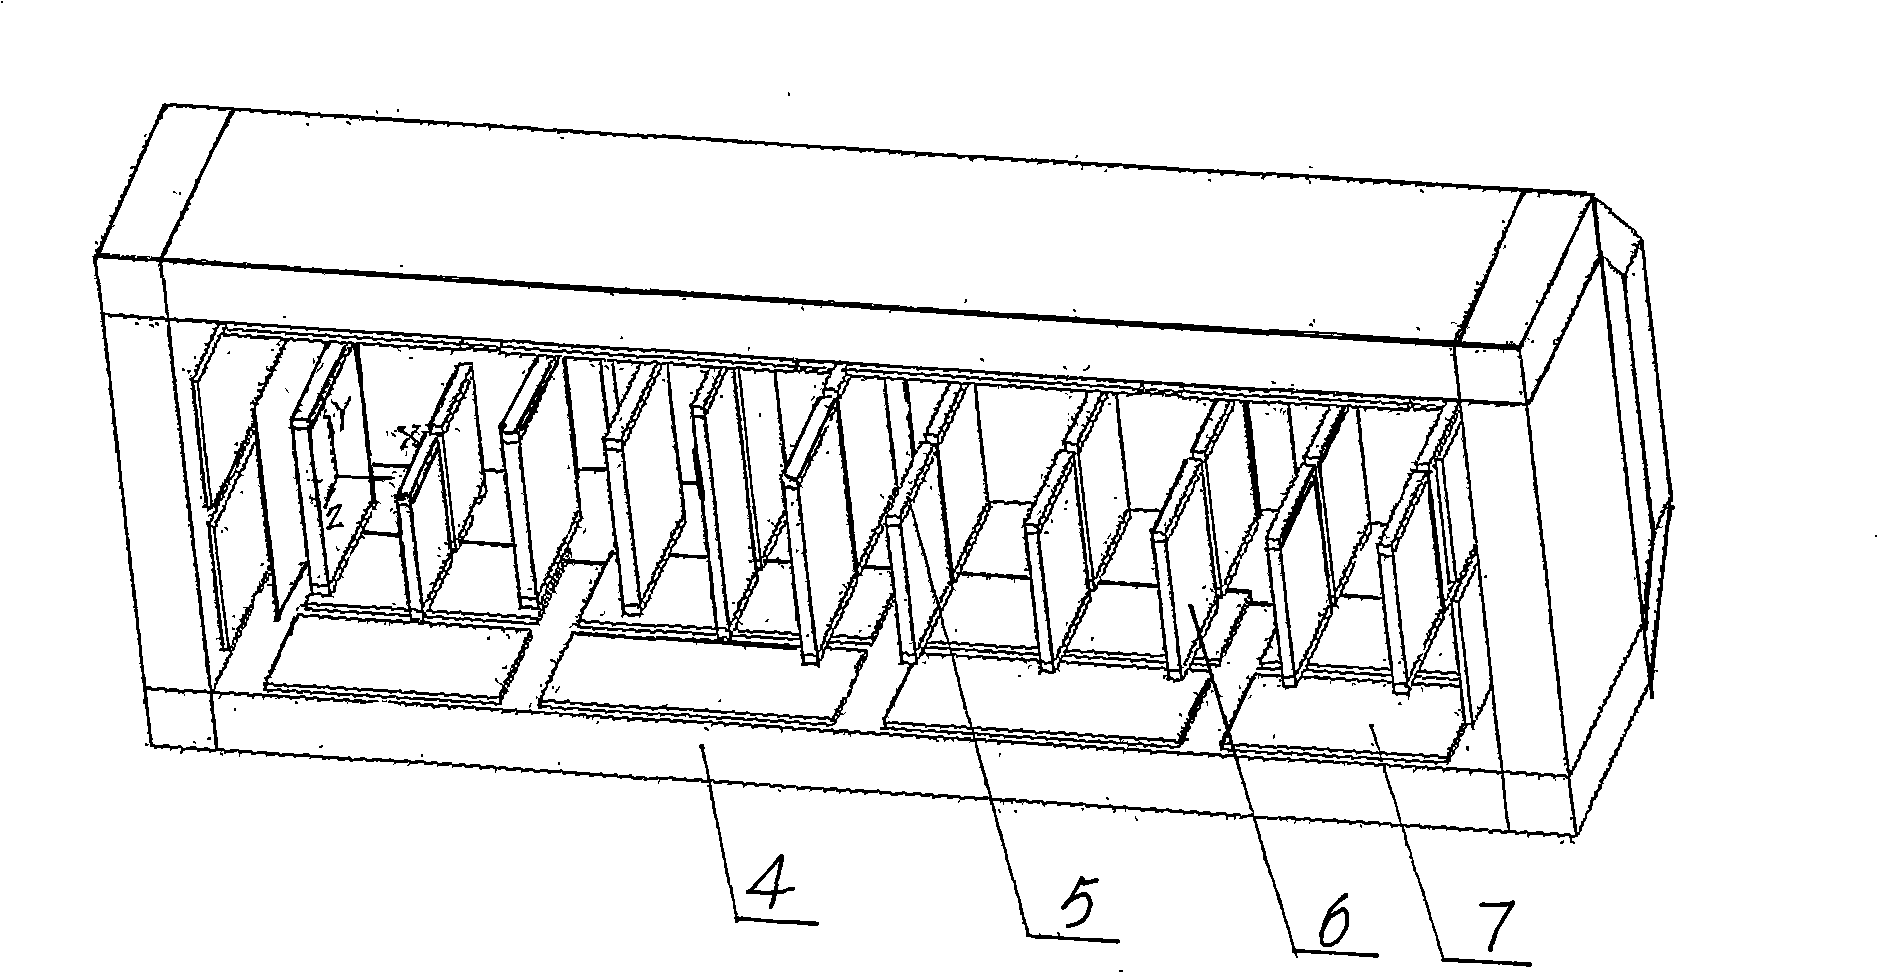 Aluminum plate fin type radiator vacuum brazing furnace temperature field equilibrium method